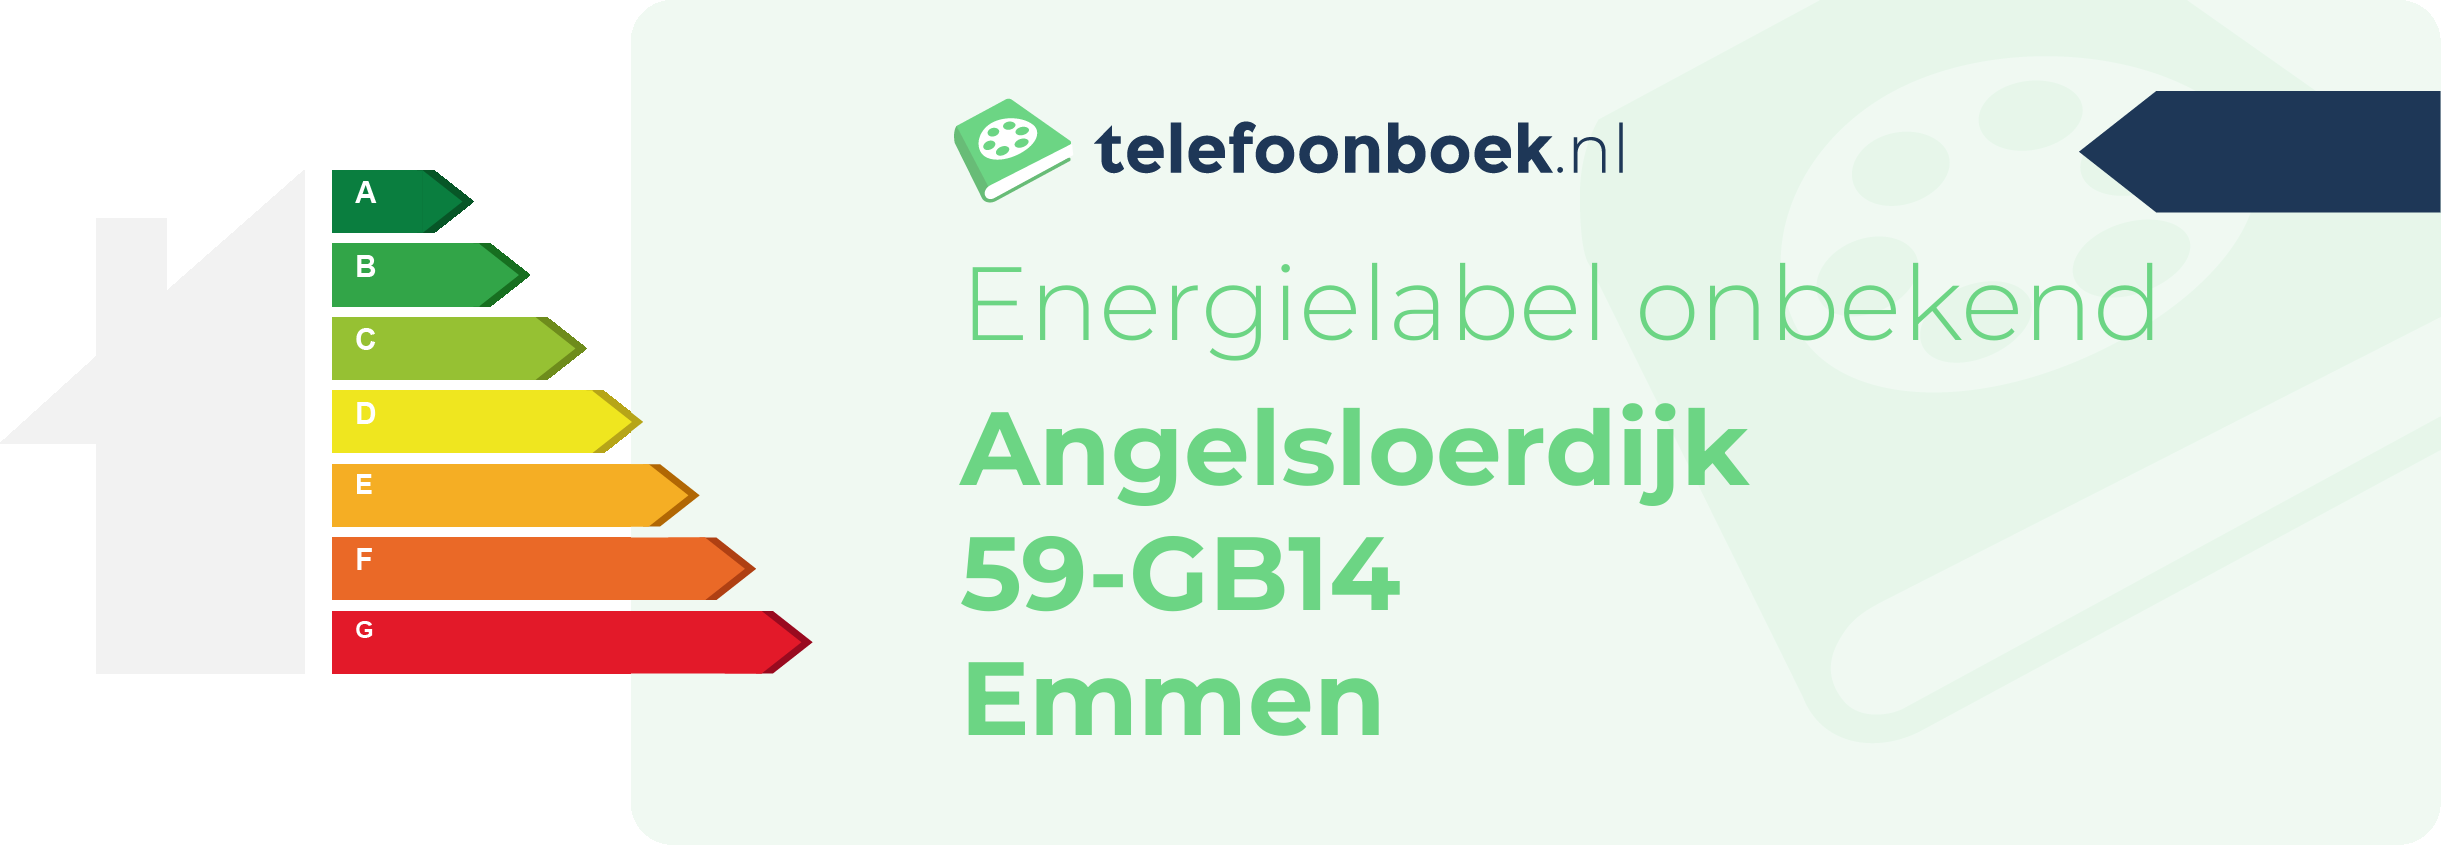 Energielabel Angelsloerdijk 59-GB14 Emmen